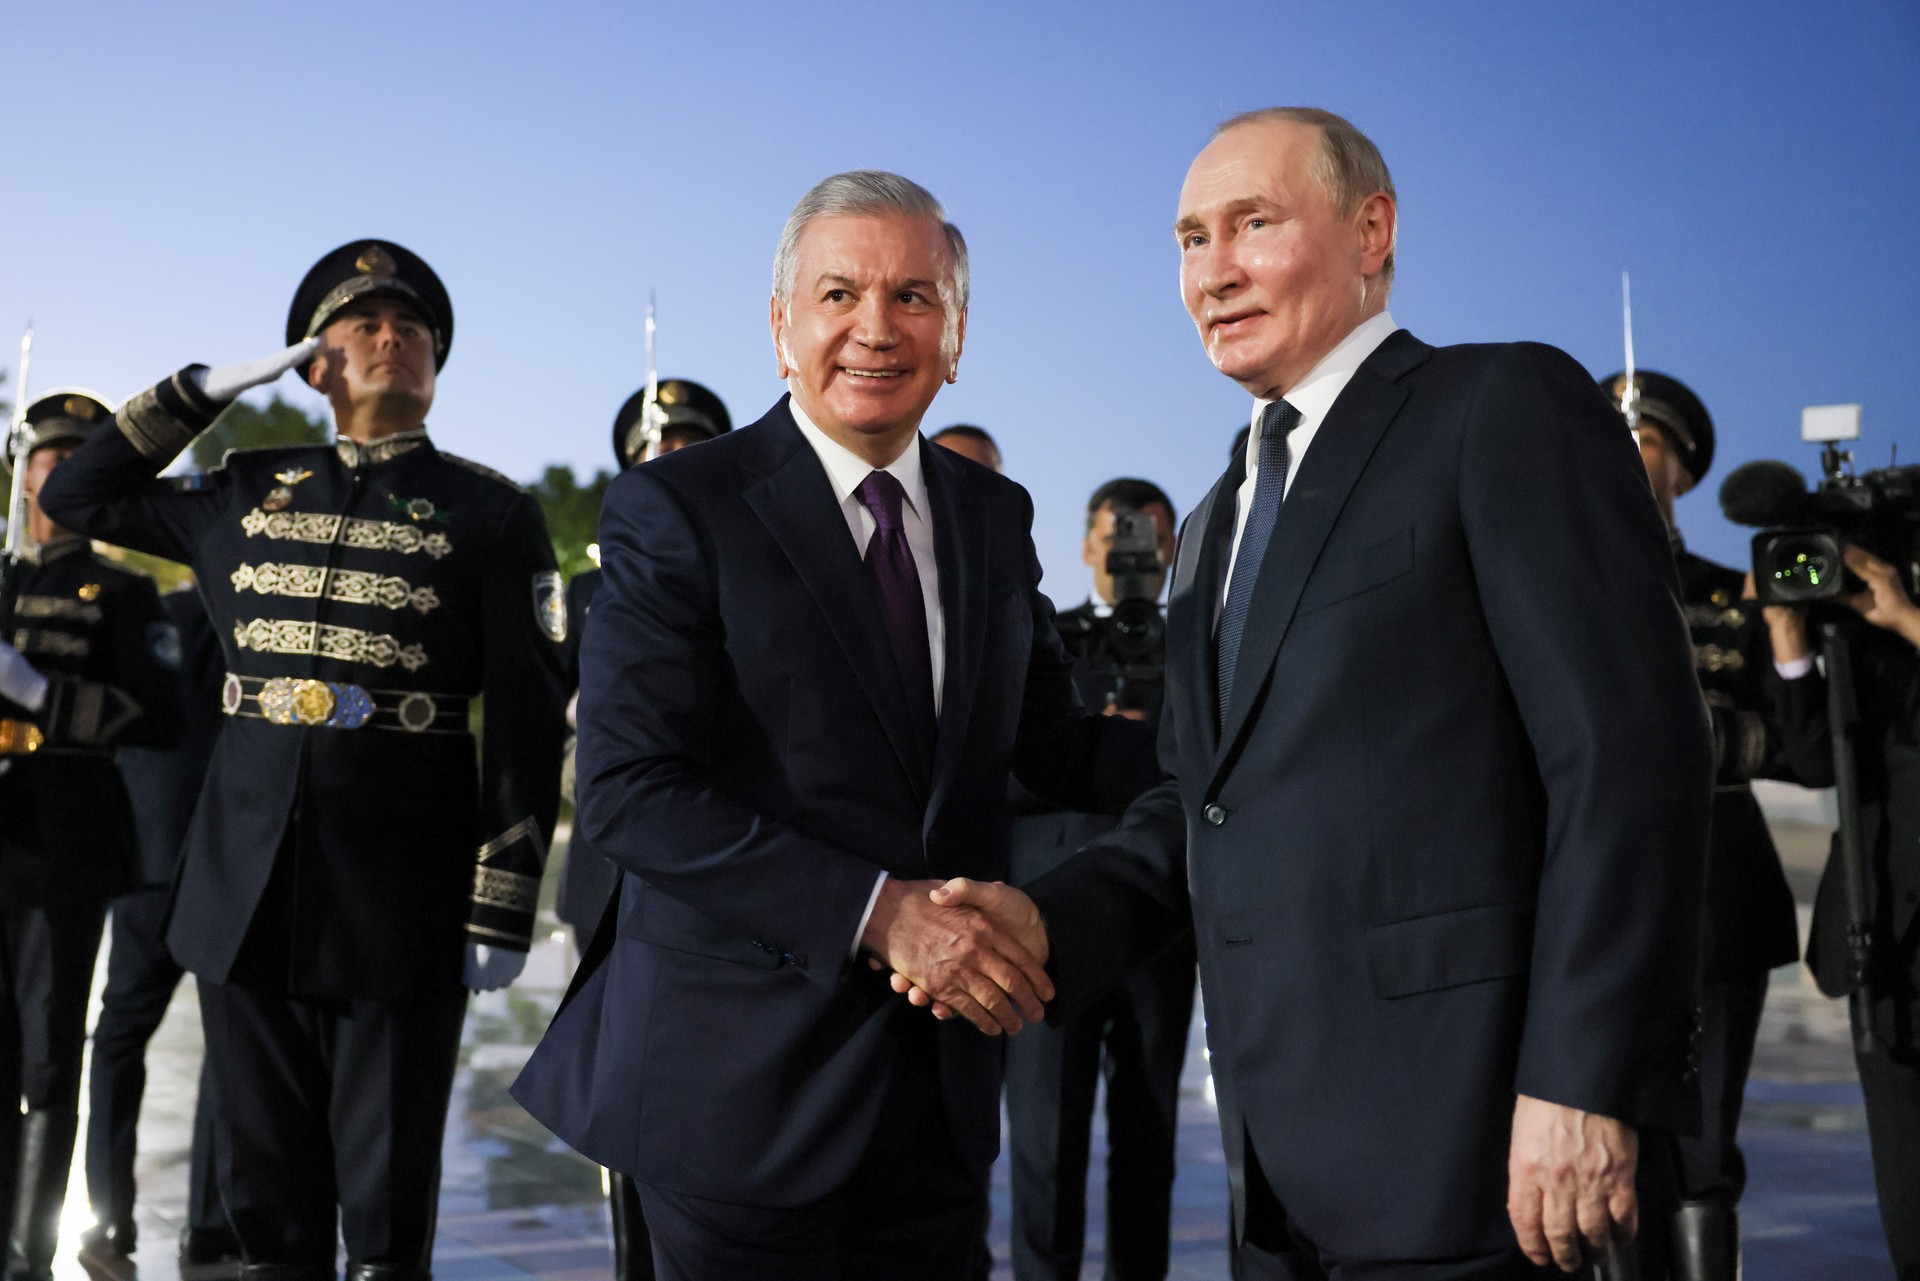 Политолог заявил, что визит Путина подчеркнул важность отношений России и Узбекистана